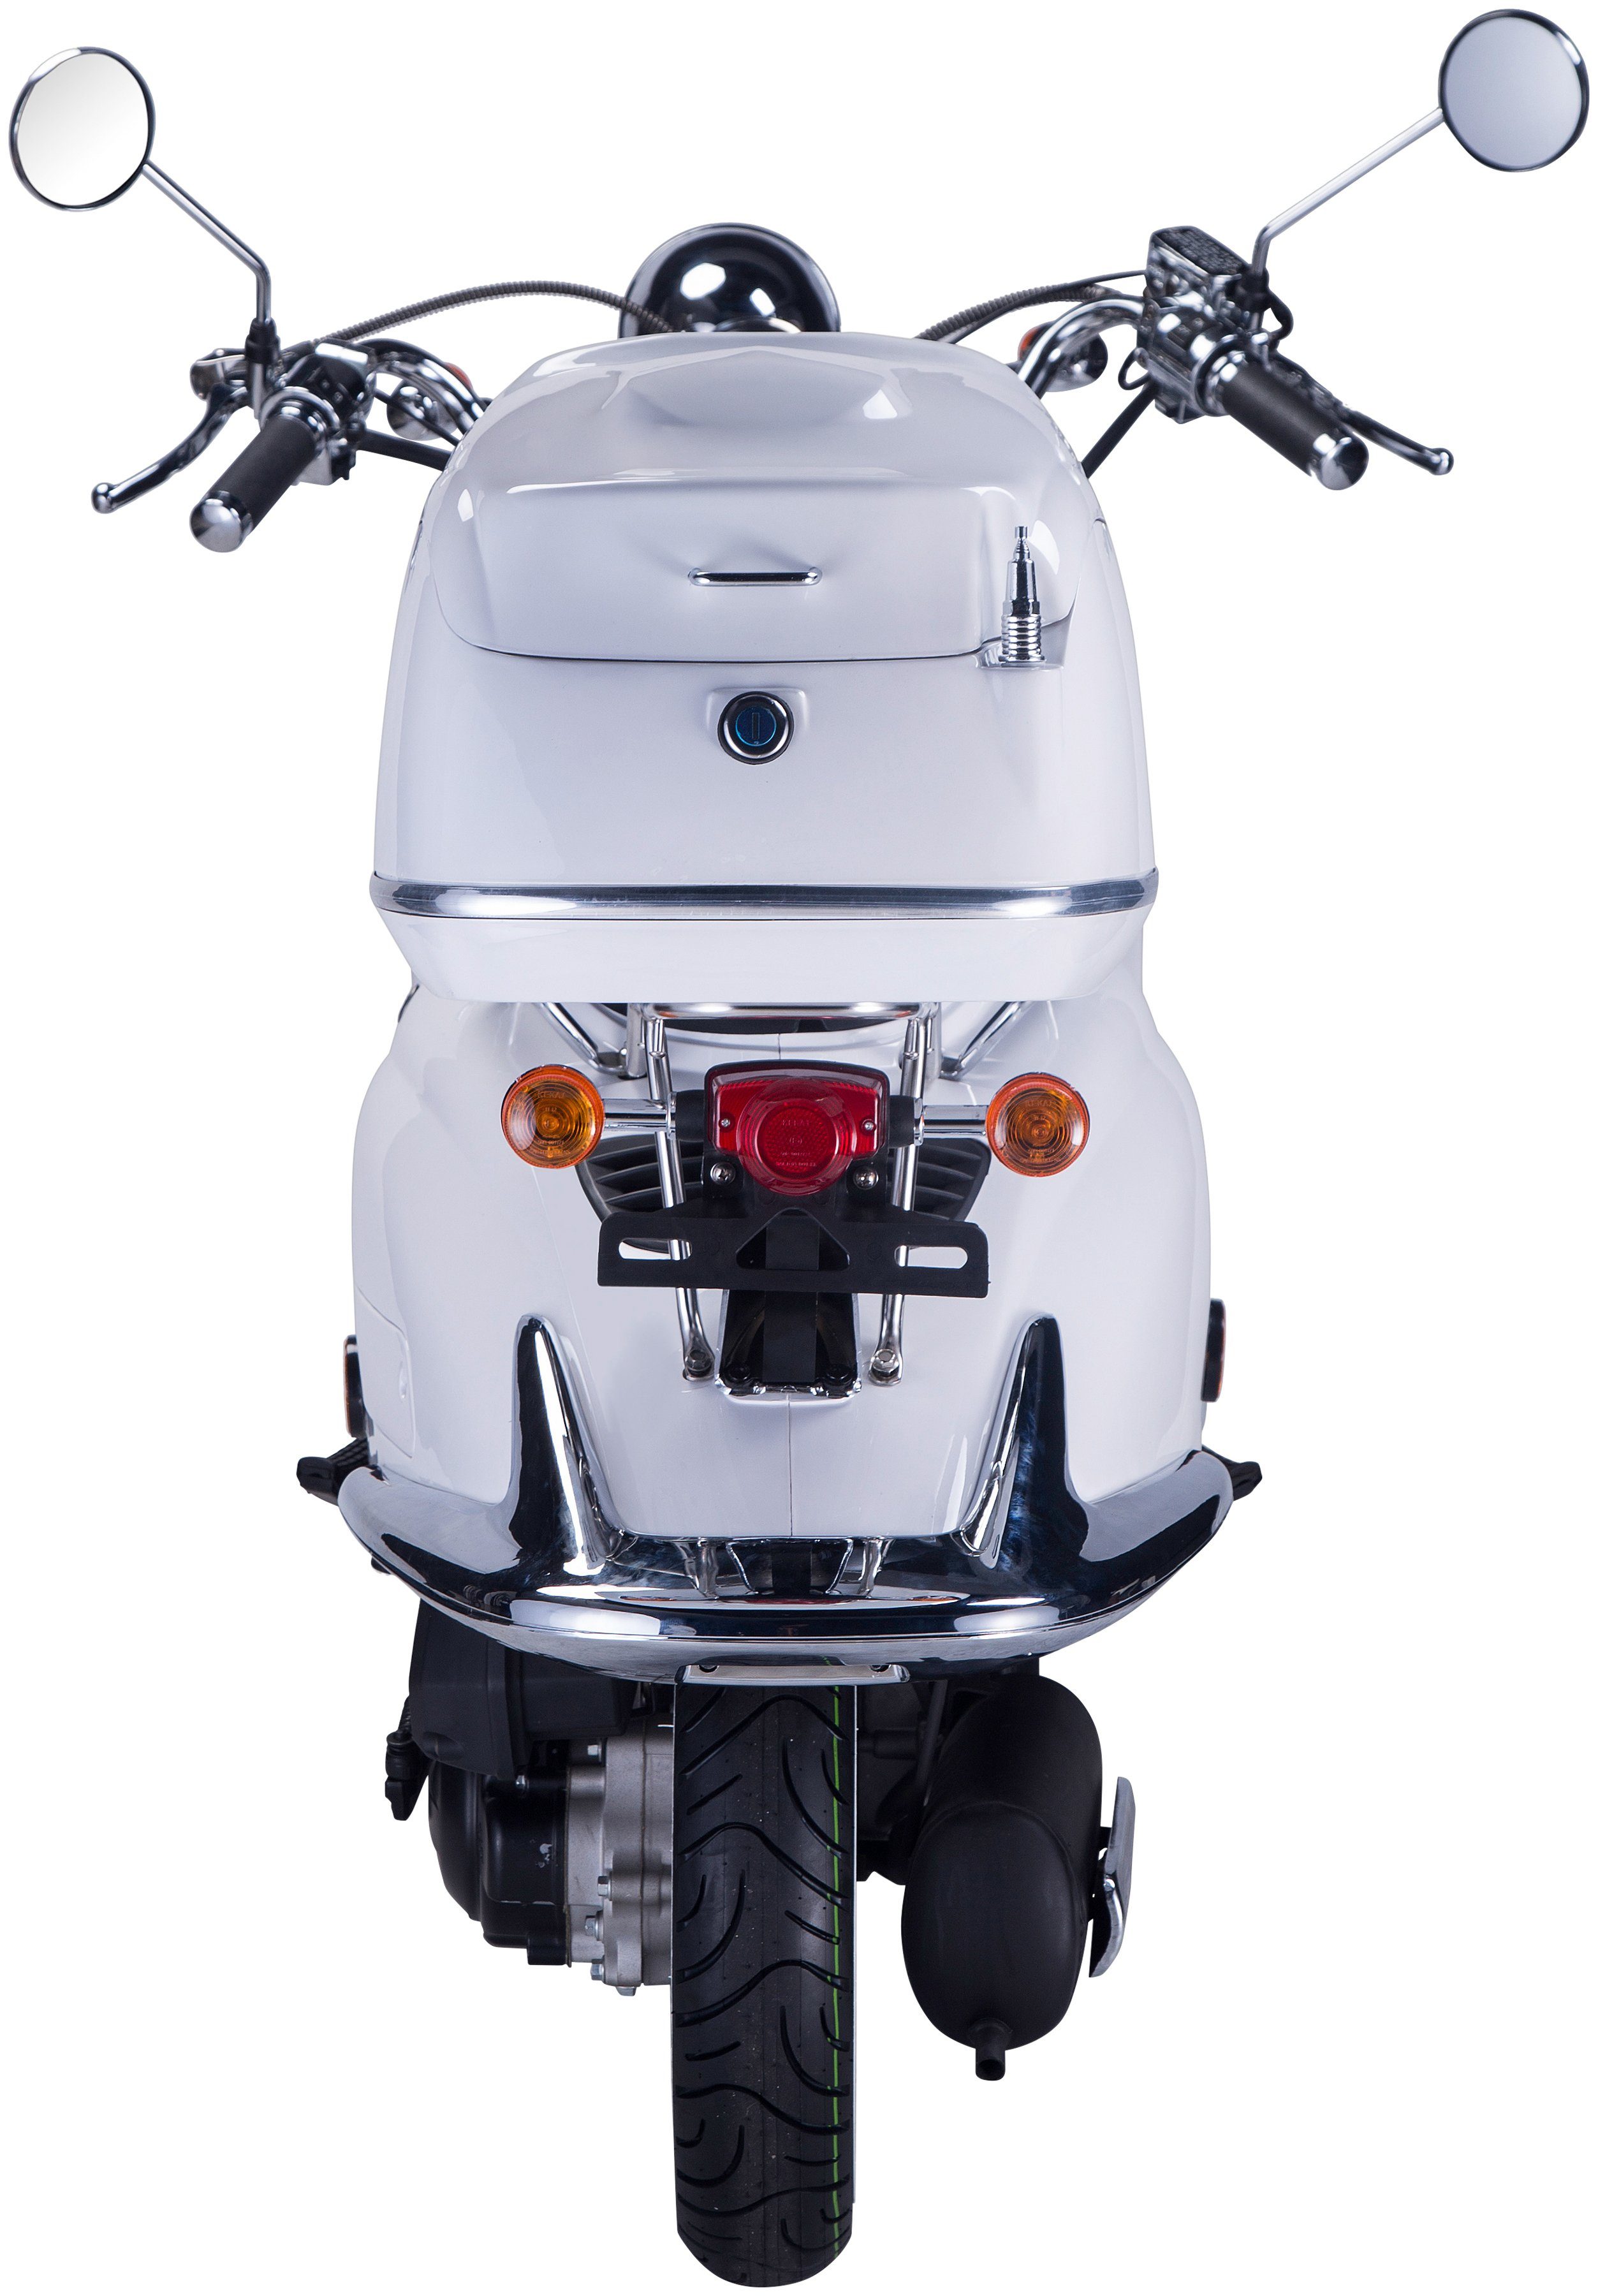 GT UNION Motorroller Strada, Euro 85 5, weiß mit 125 Topcase ccm, km/h, (Set)